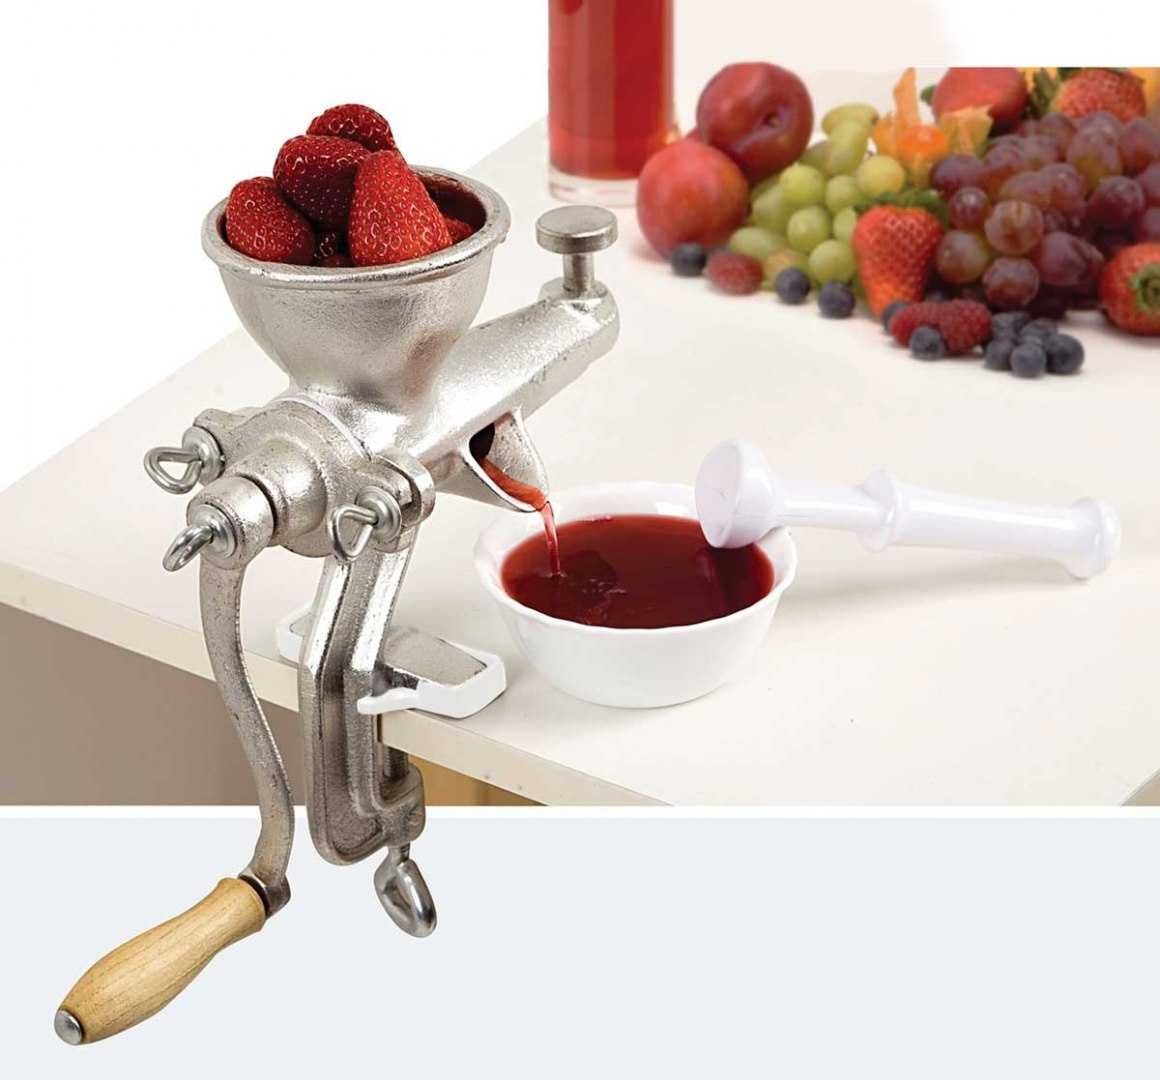 Wyciskarka do owoców warzyw soku ręczna maszynka żeliwna  Kinghoff